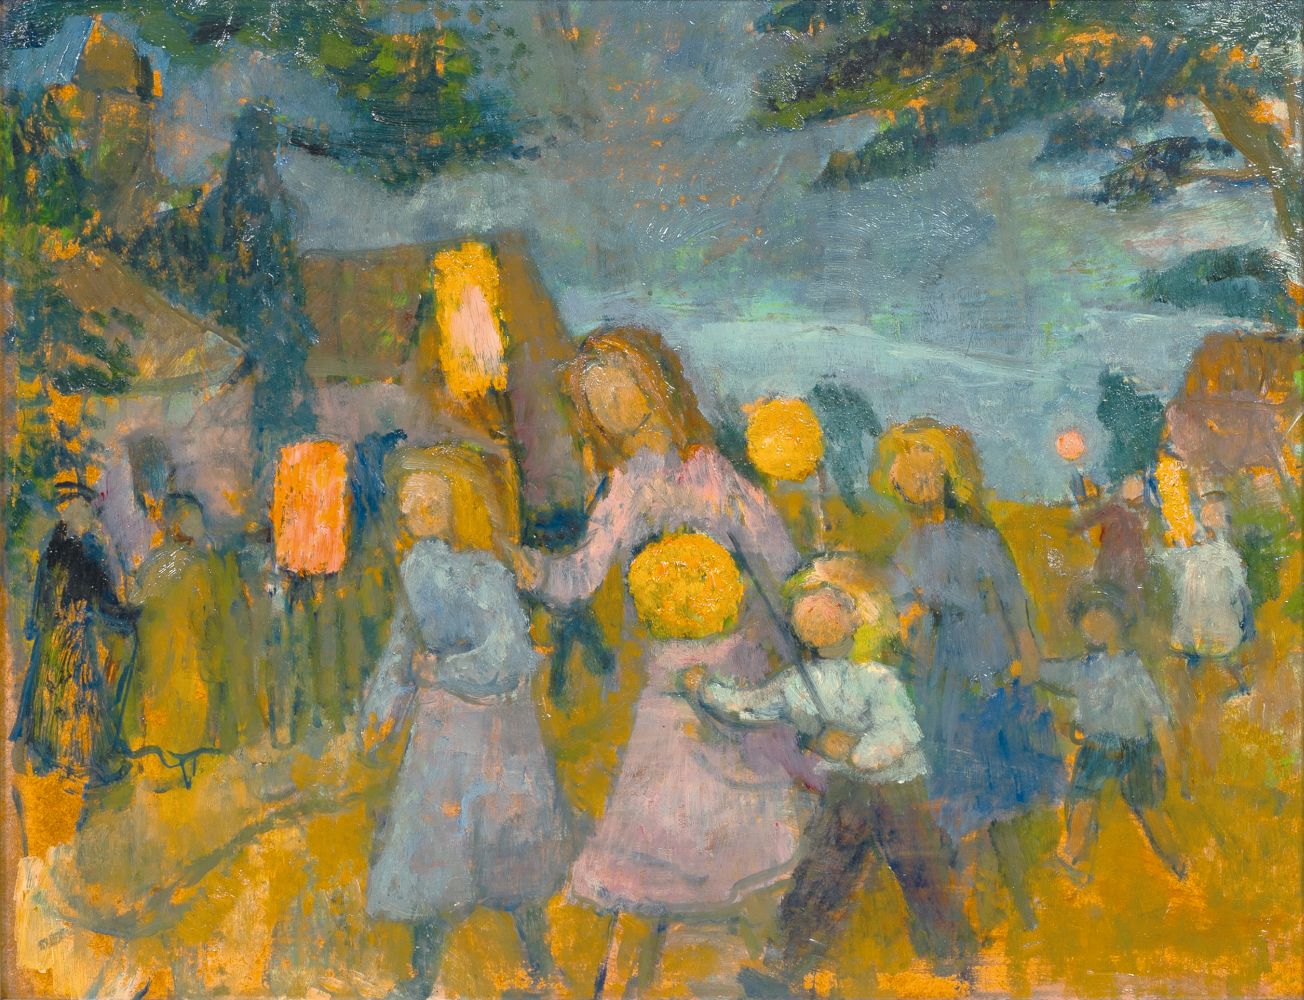 Children with Lanterns